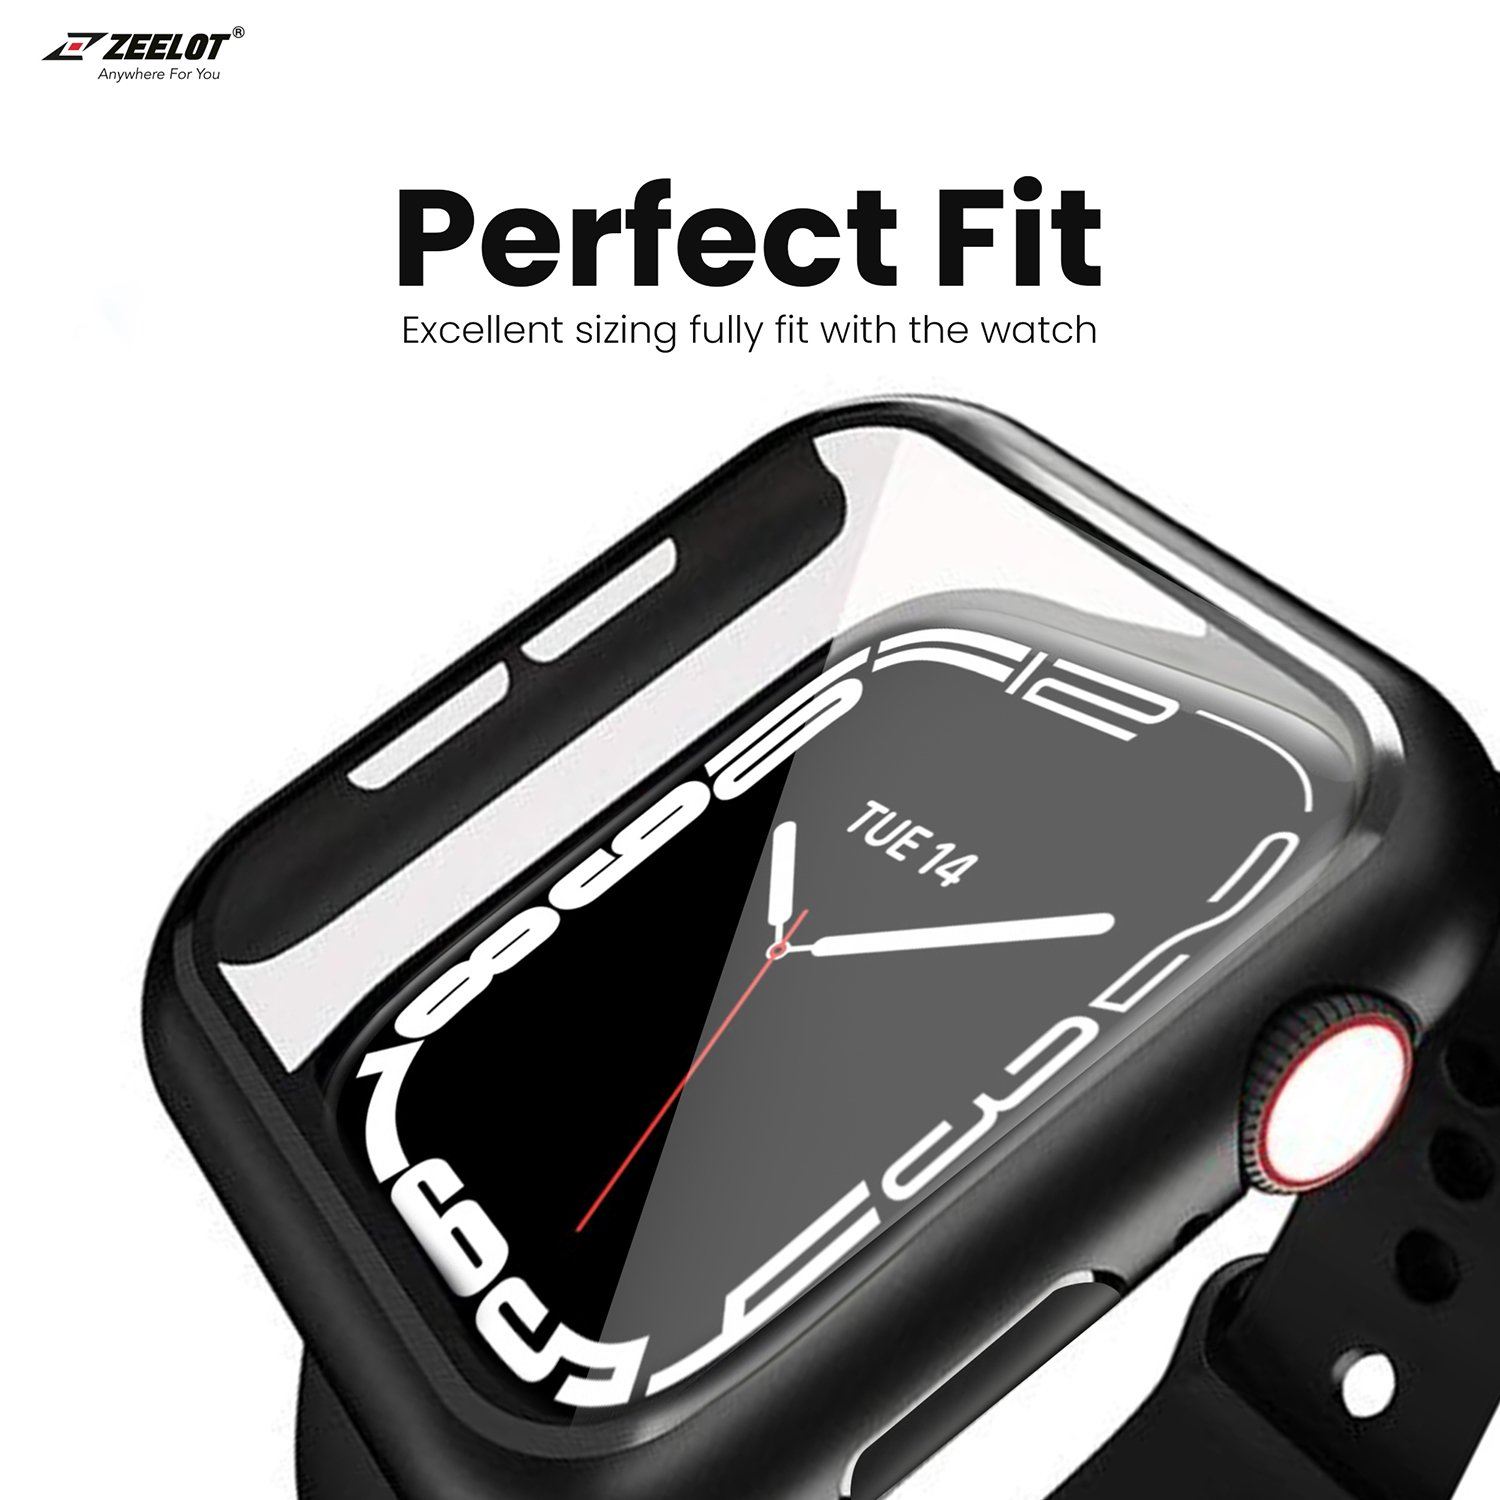 ZEELOT PIshield Full Protection 2 in 1 Case for Apple Watch 41mm, Black Default ZEELOT 